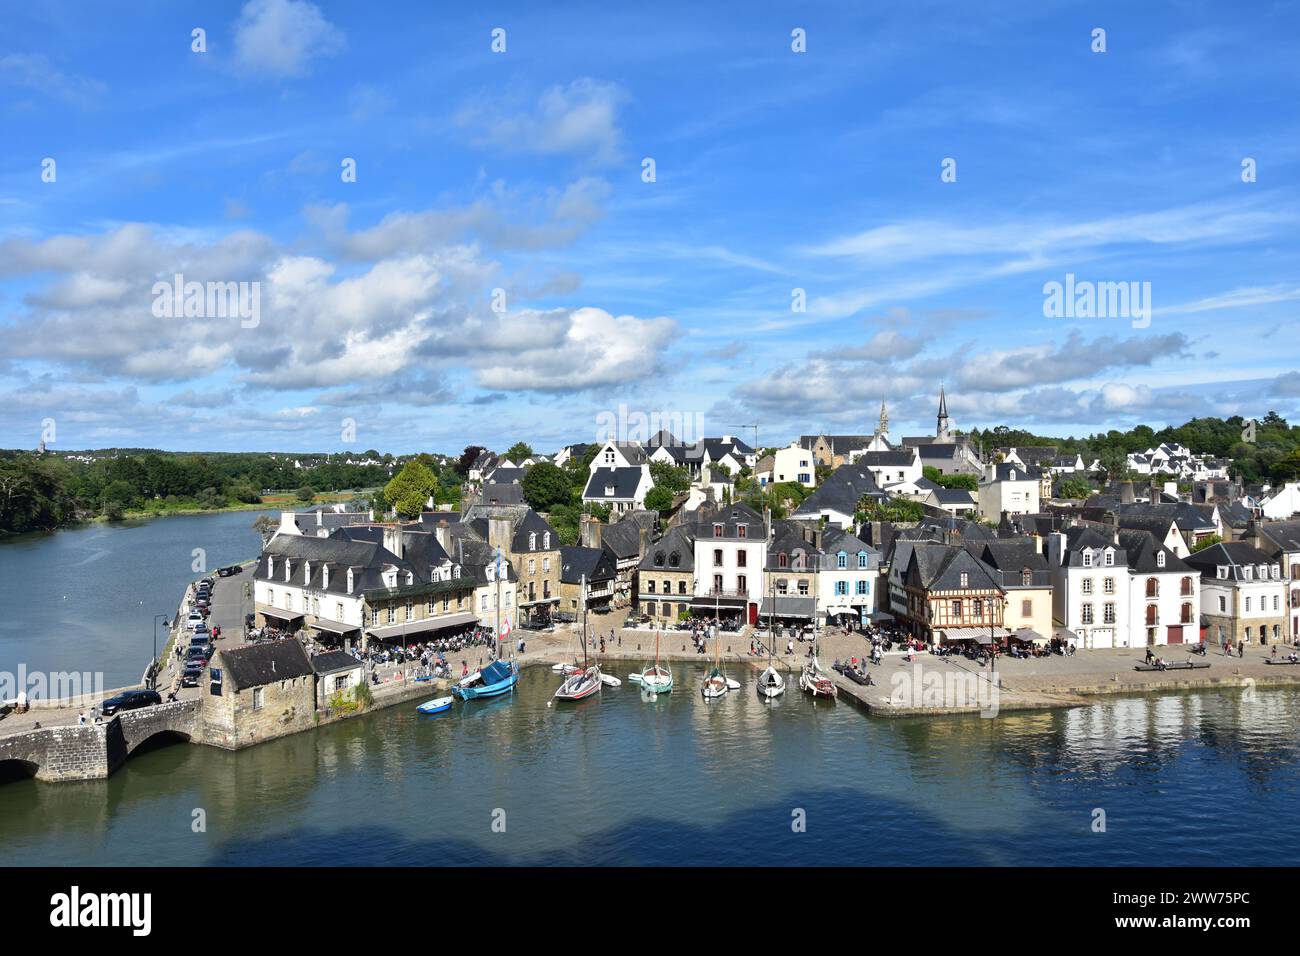 vue supérieure d'un village breton au bord de la rivière, france Banque D'Images